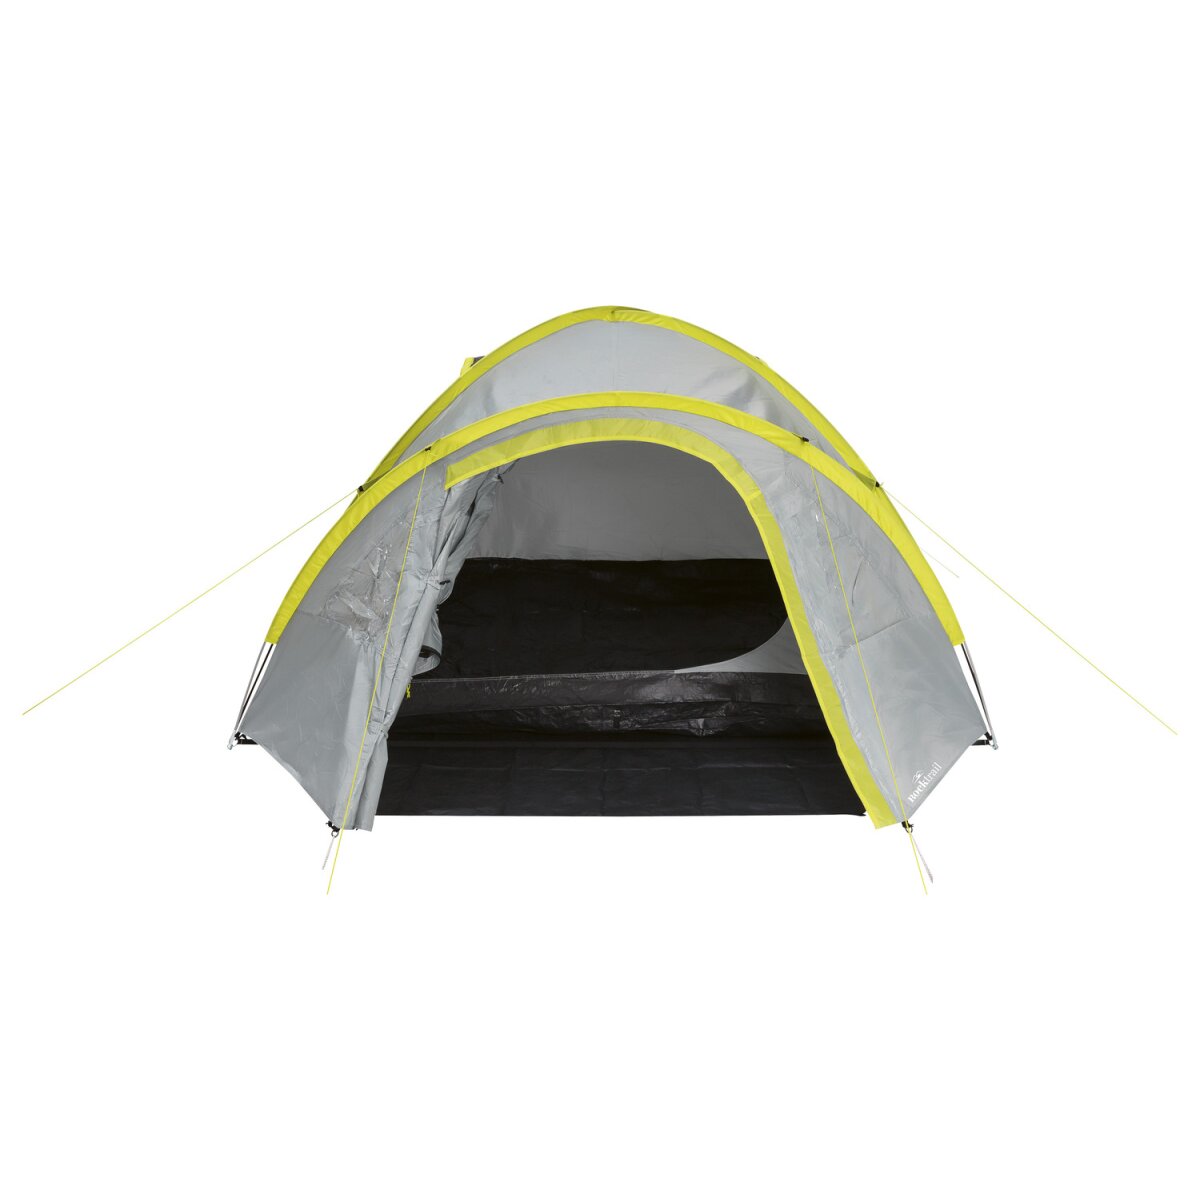 Rocktrail Campingzelt B-Ware, Doppeldach für 34,99 - 4 € Personen, mit